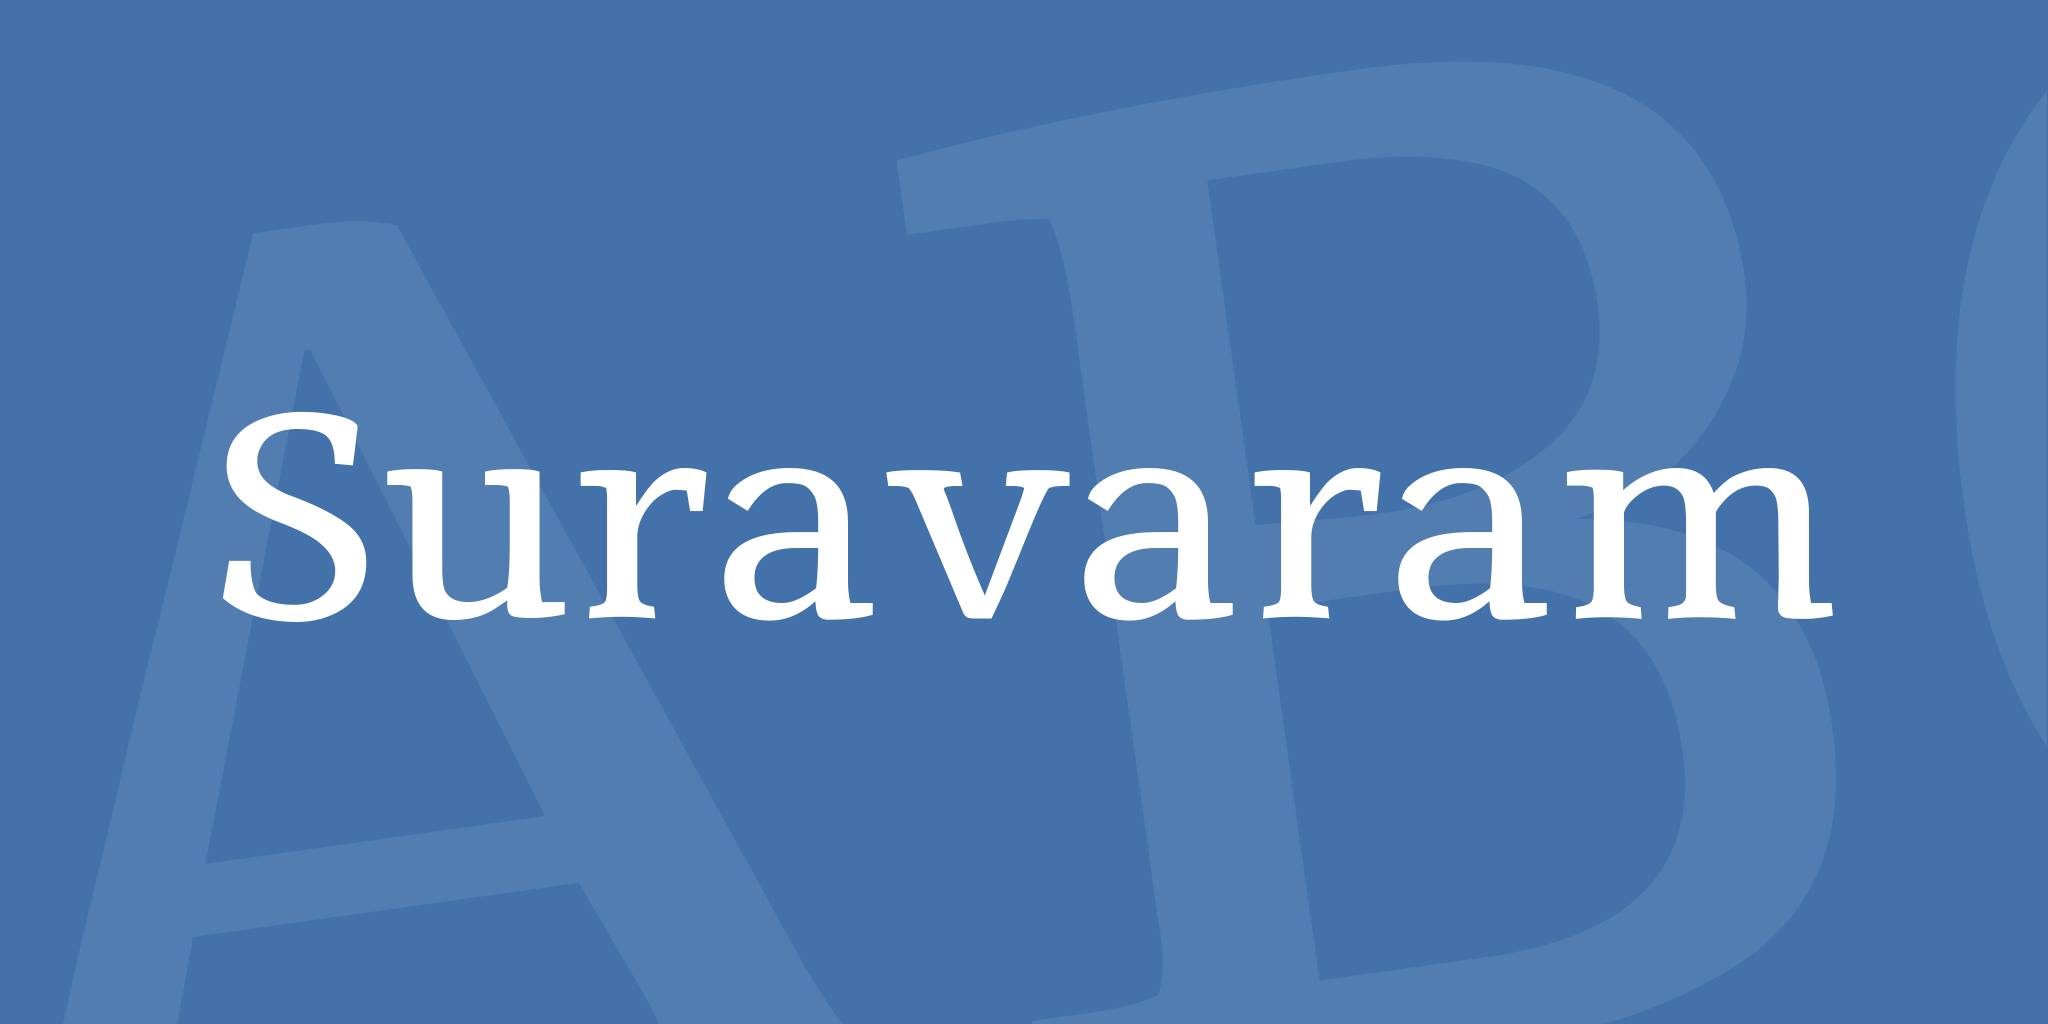 Suravaram